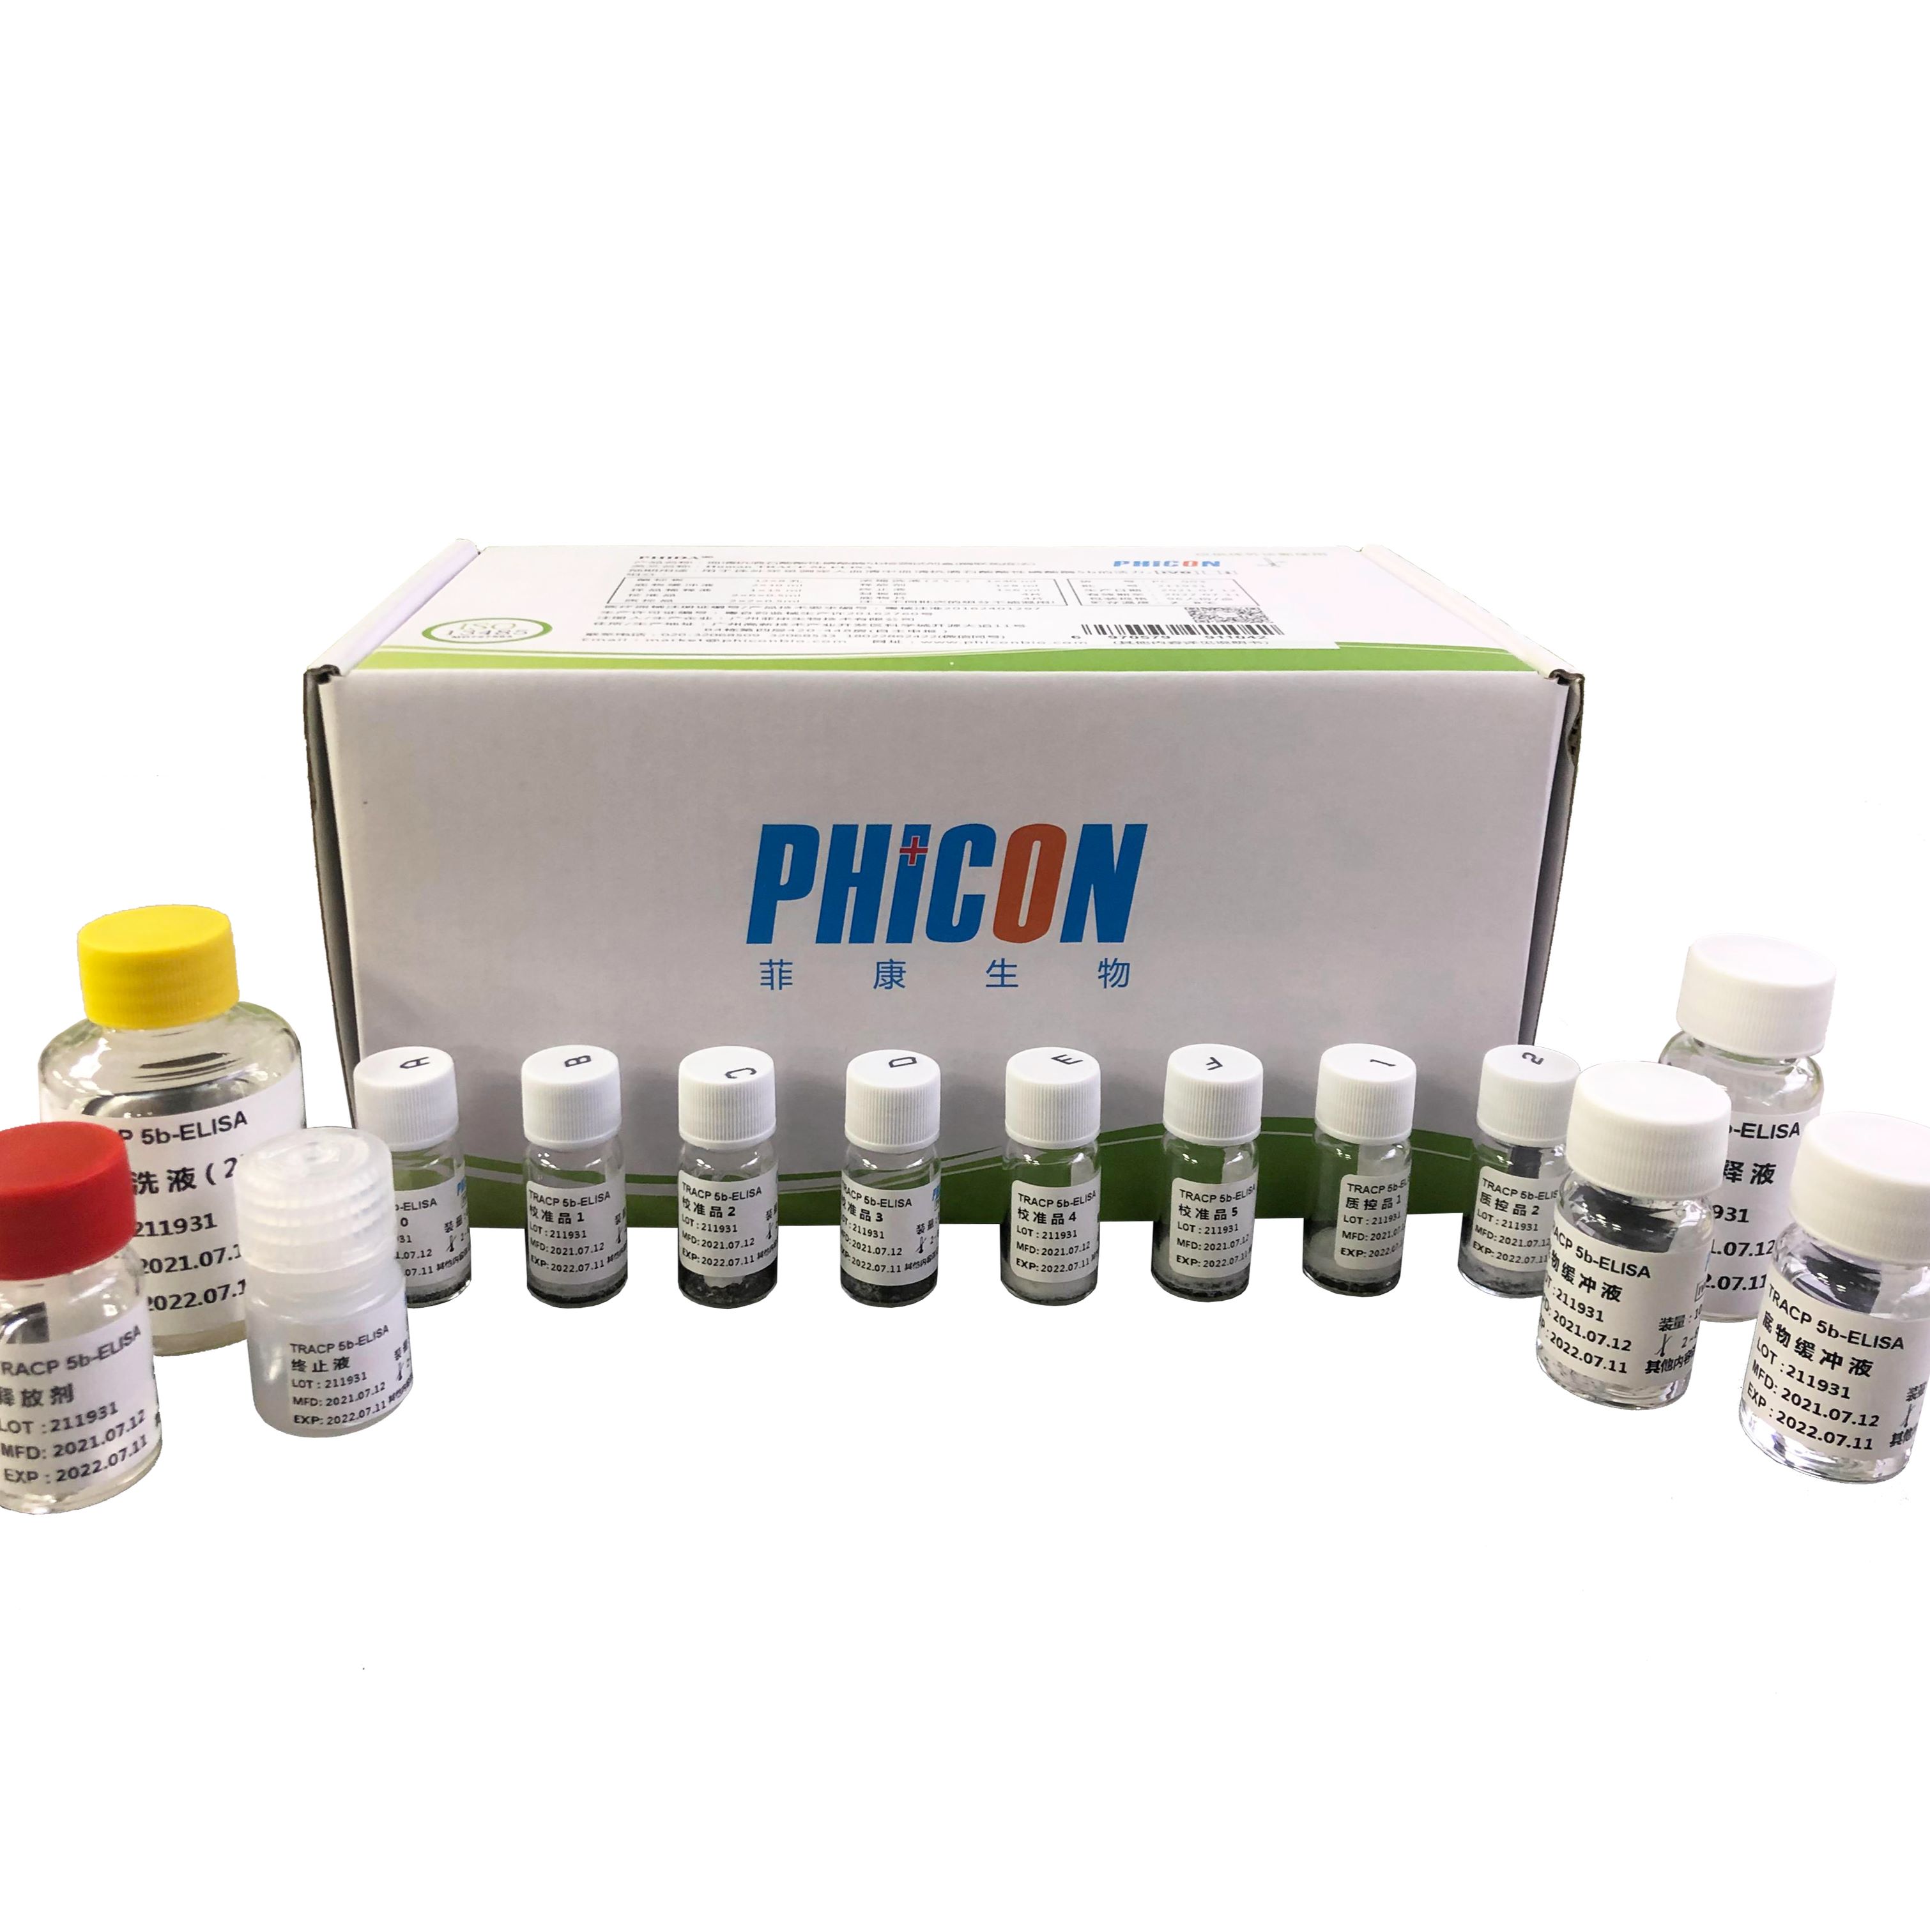 血清抗酒石酸酸性磷酸酶5b检测试剂盒（酶联免疫法）